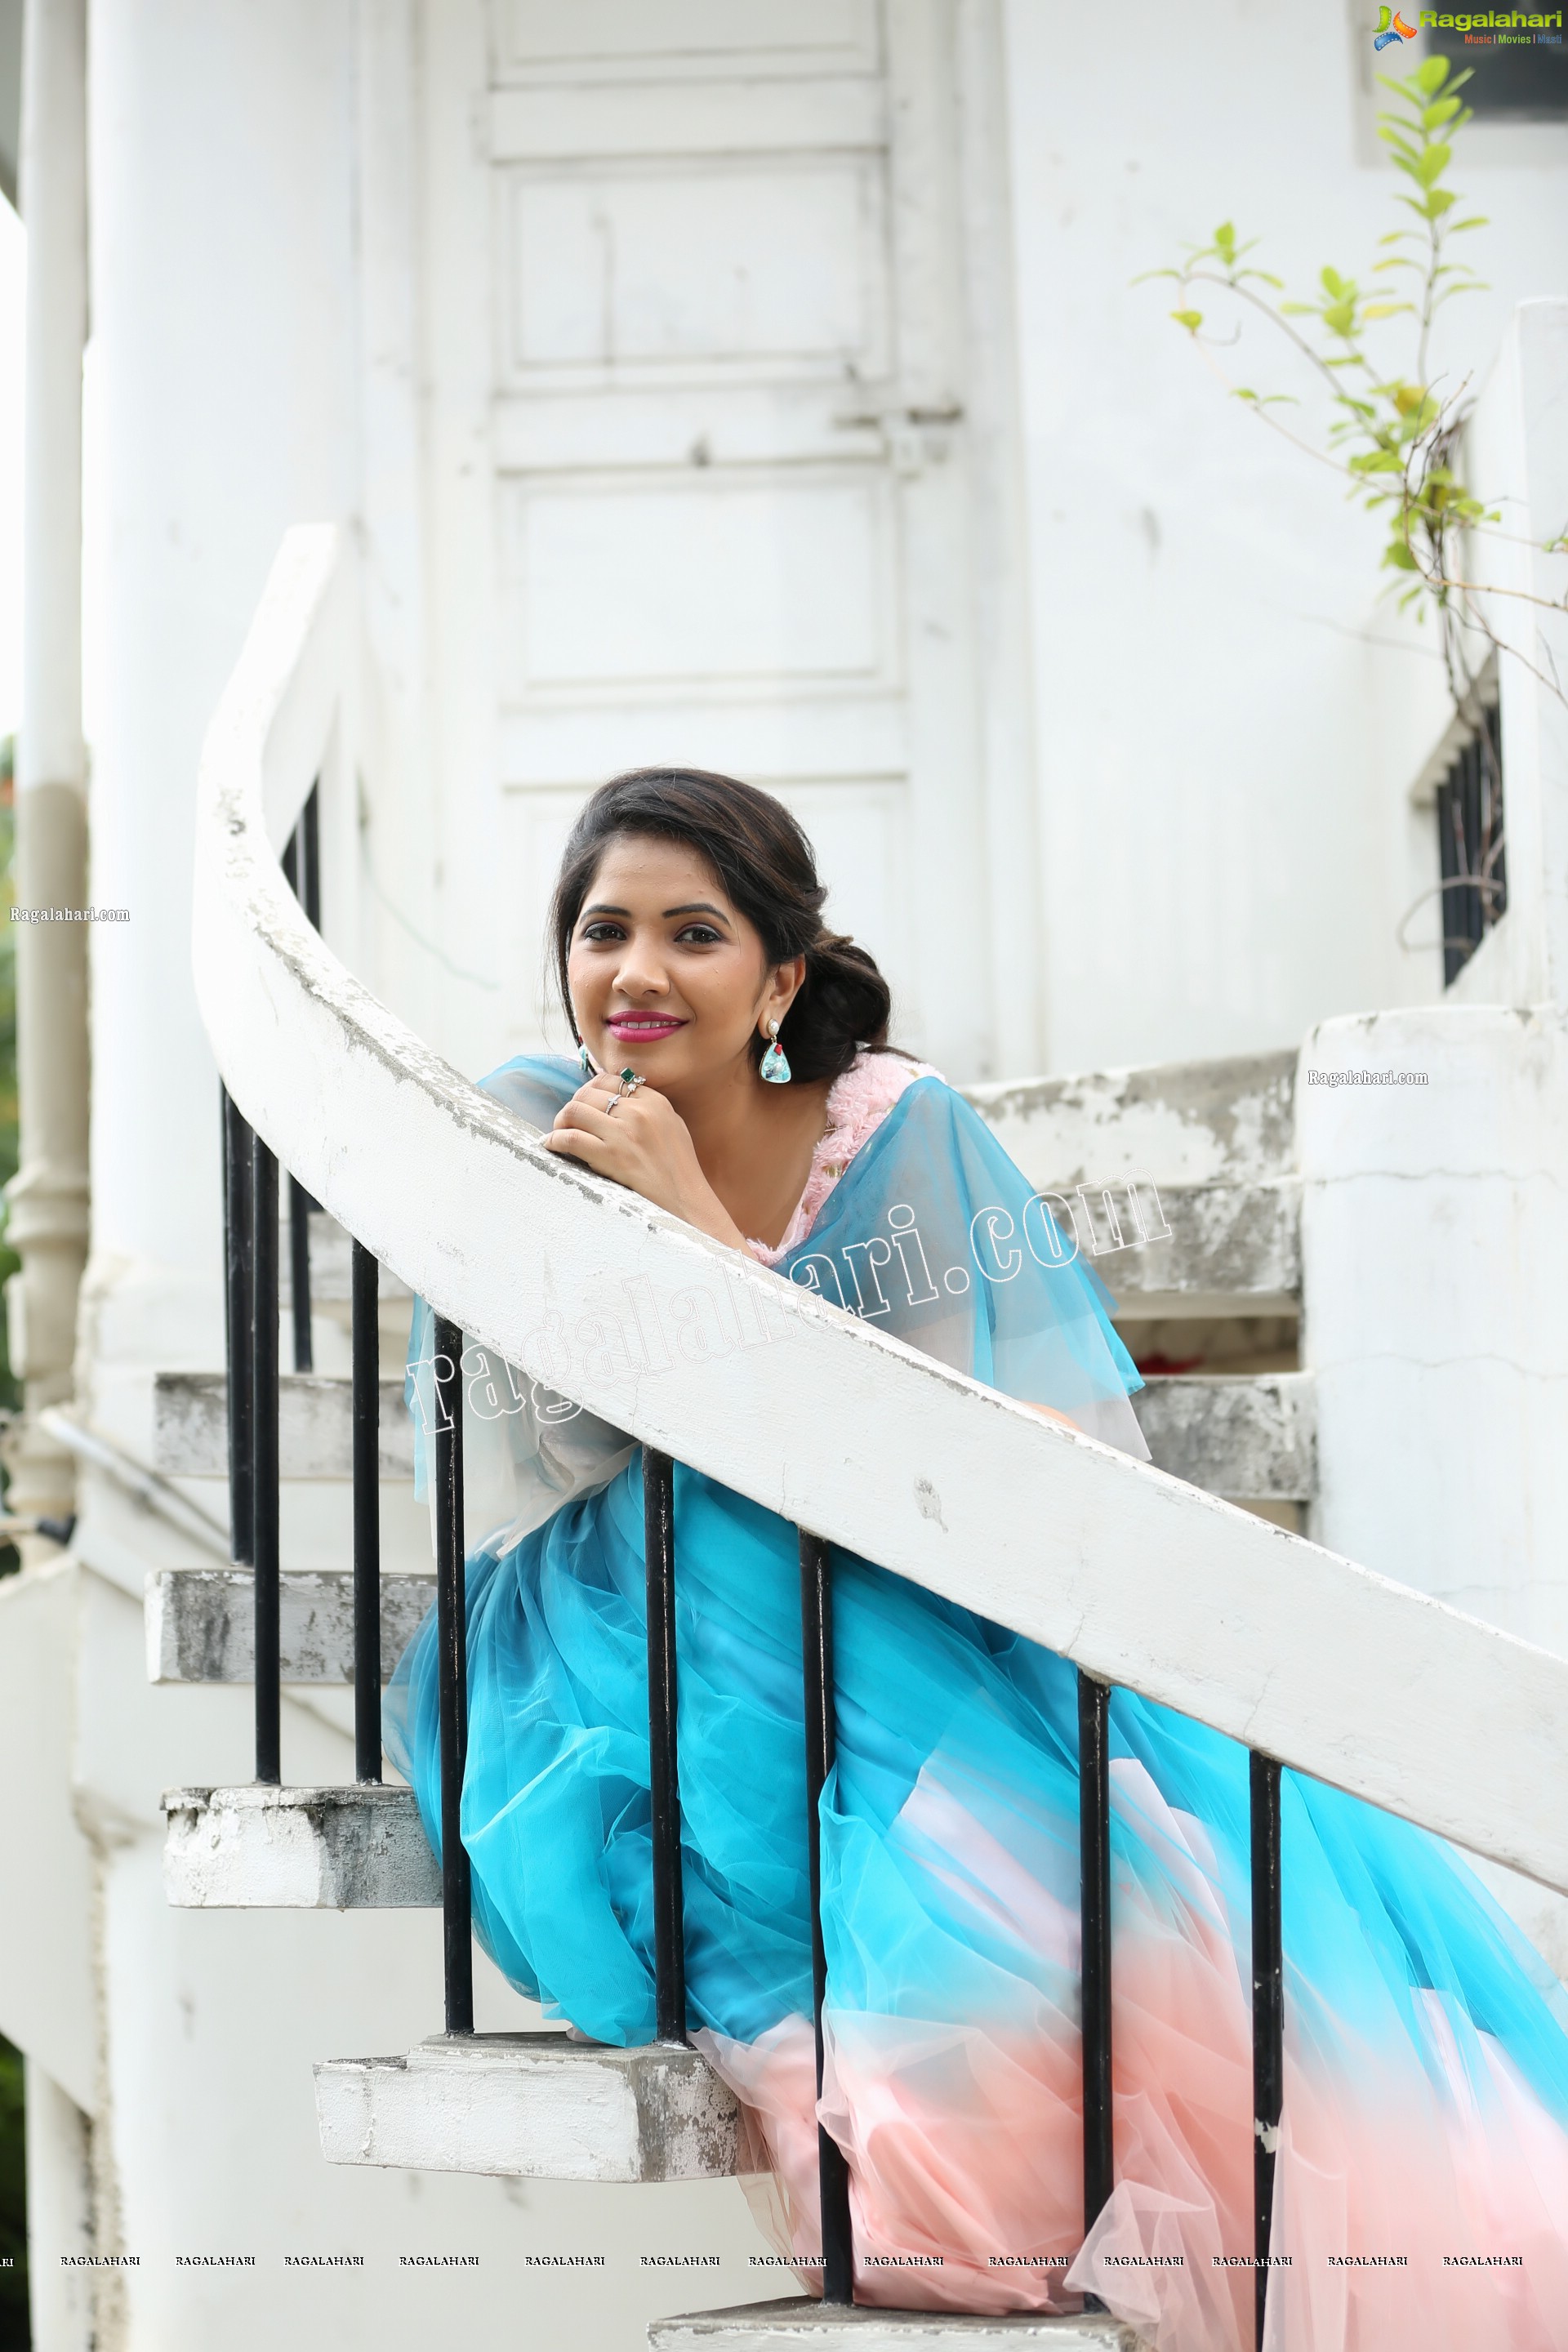 Indu in Bell Sleeves Pink Crop Top and Sky Blue Net Lehenga Exclusive Photo Shoot